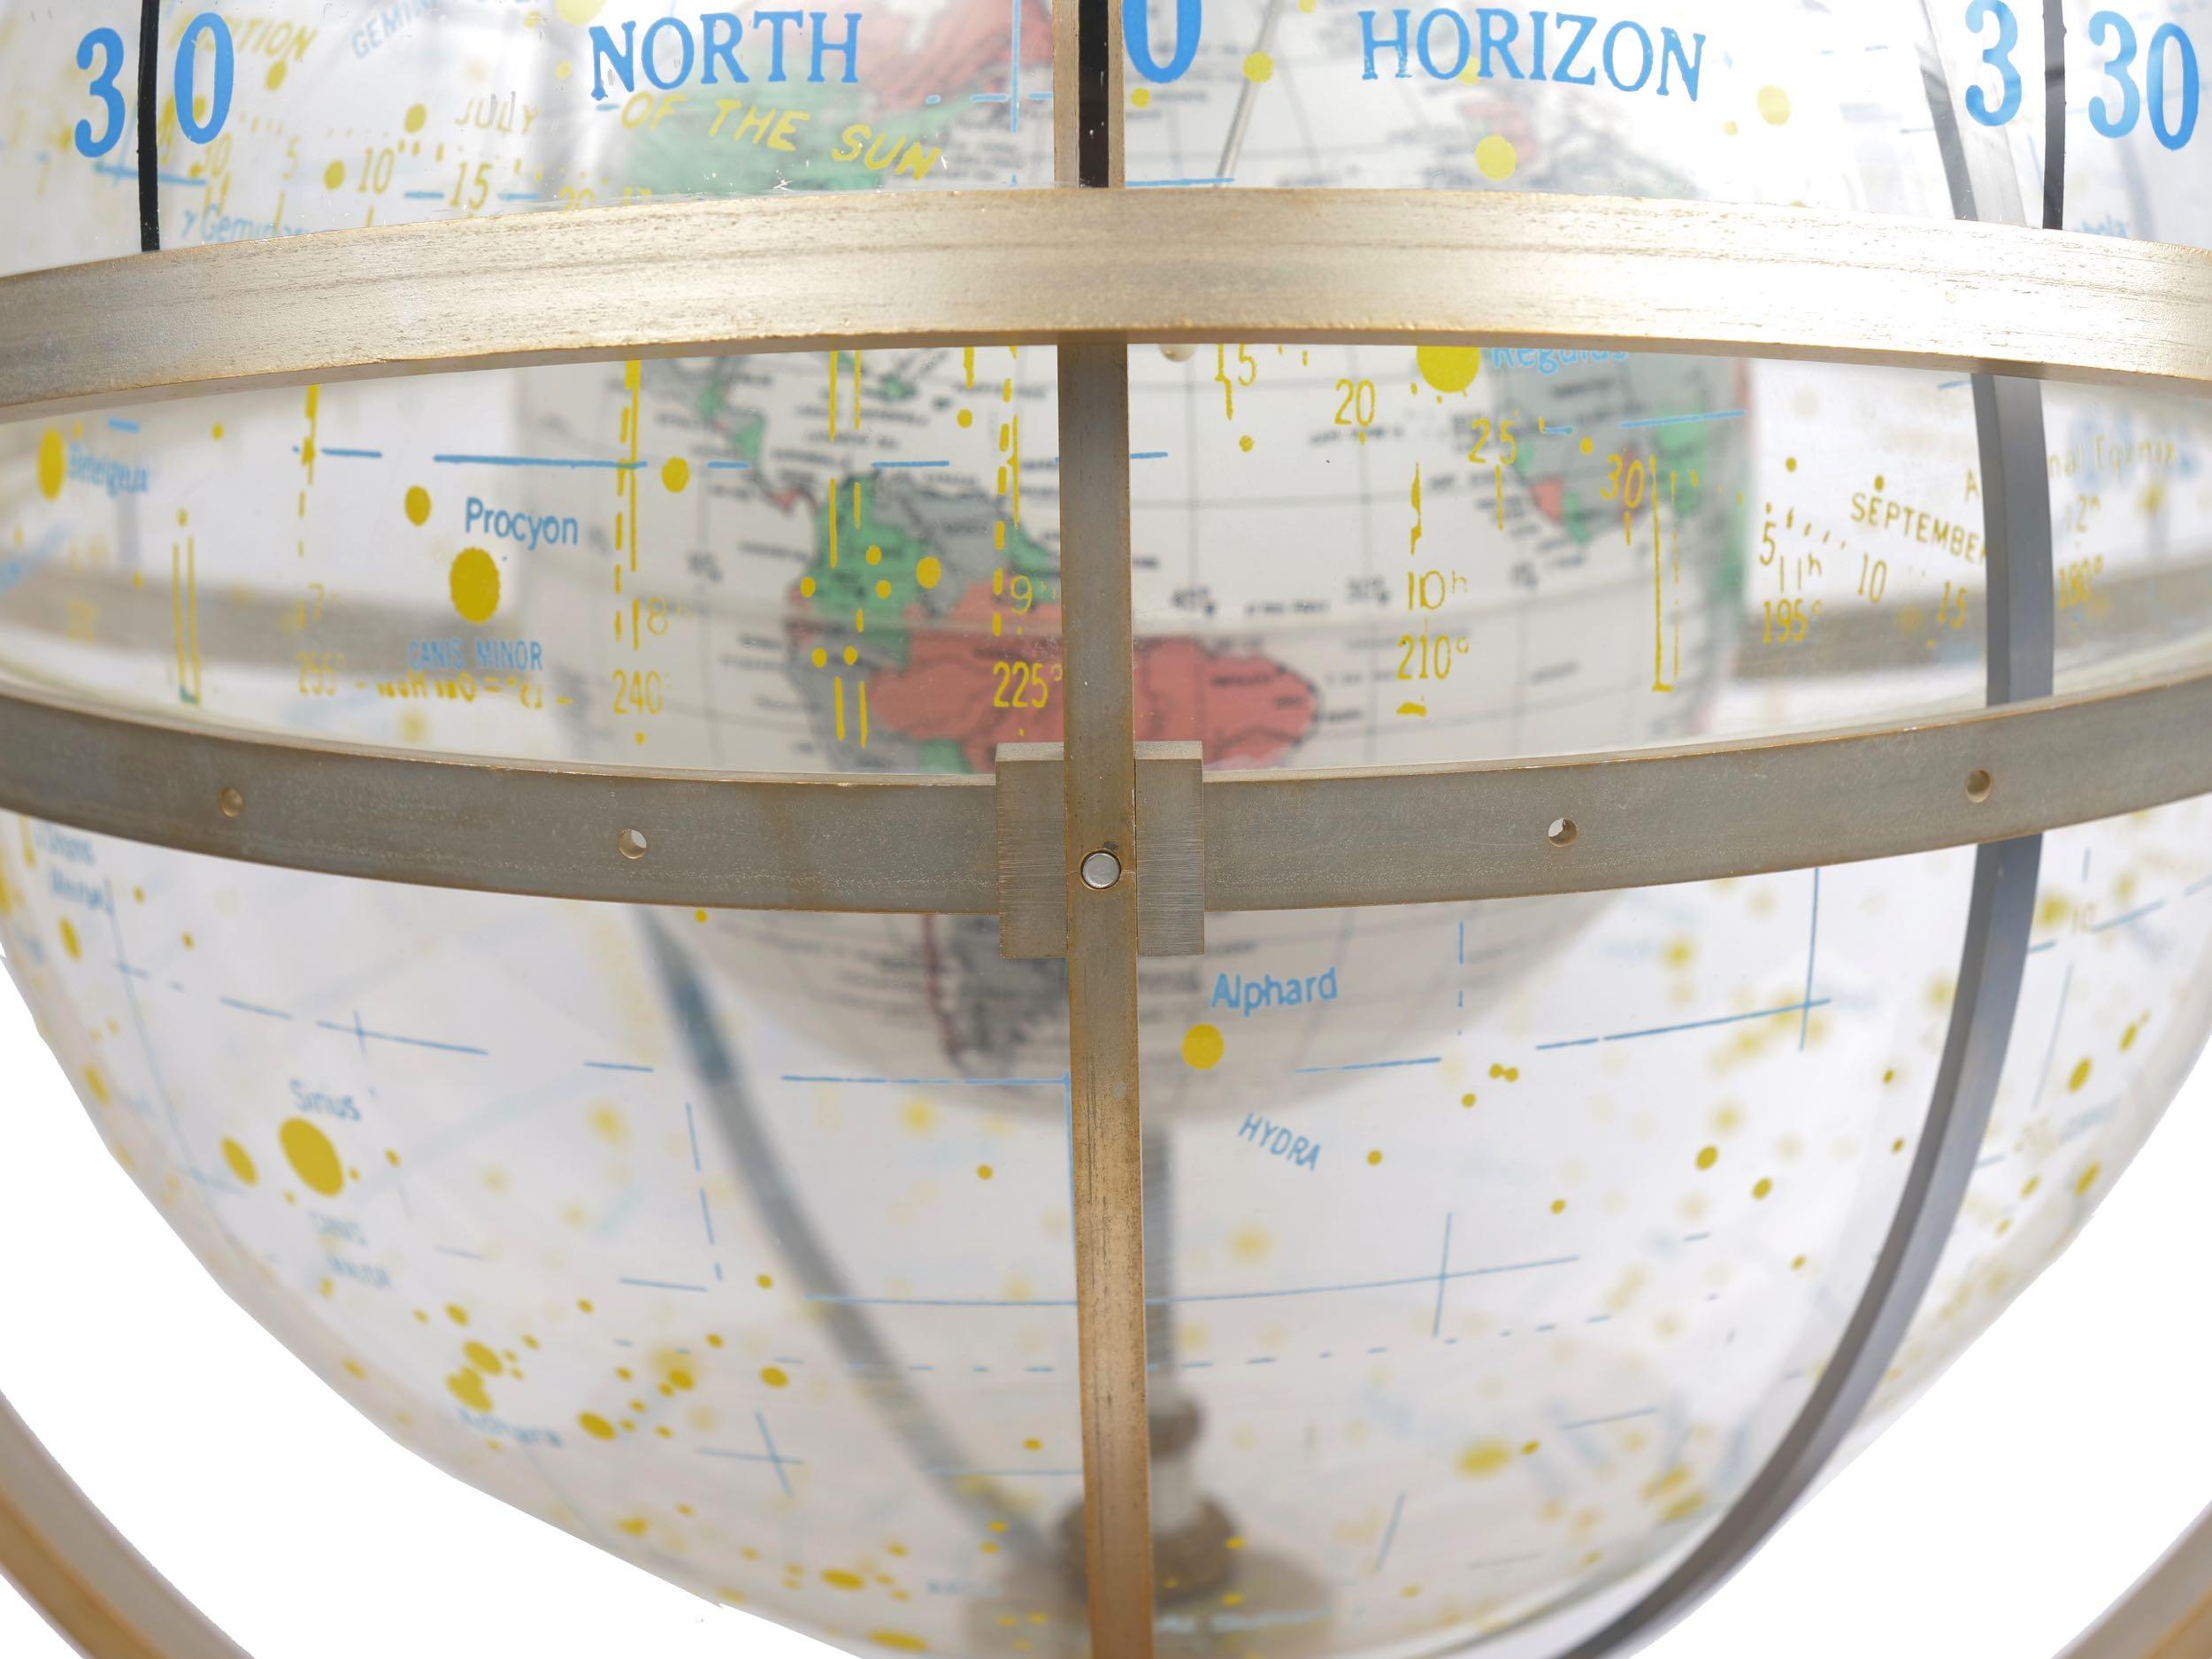 Farquhar Celestial Navigation Armillary Sphere Globe for Dept. of Navy 3